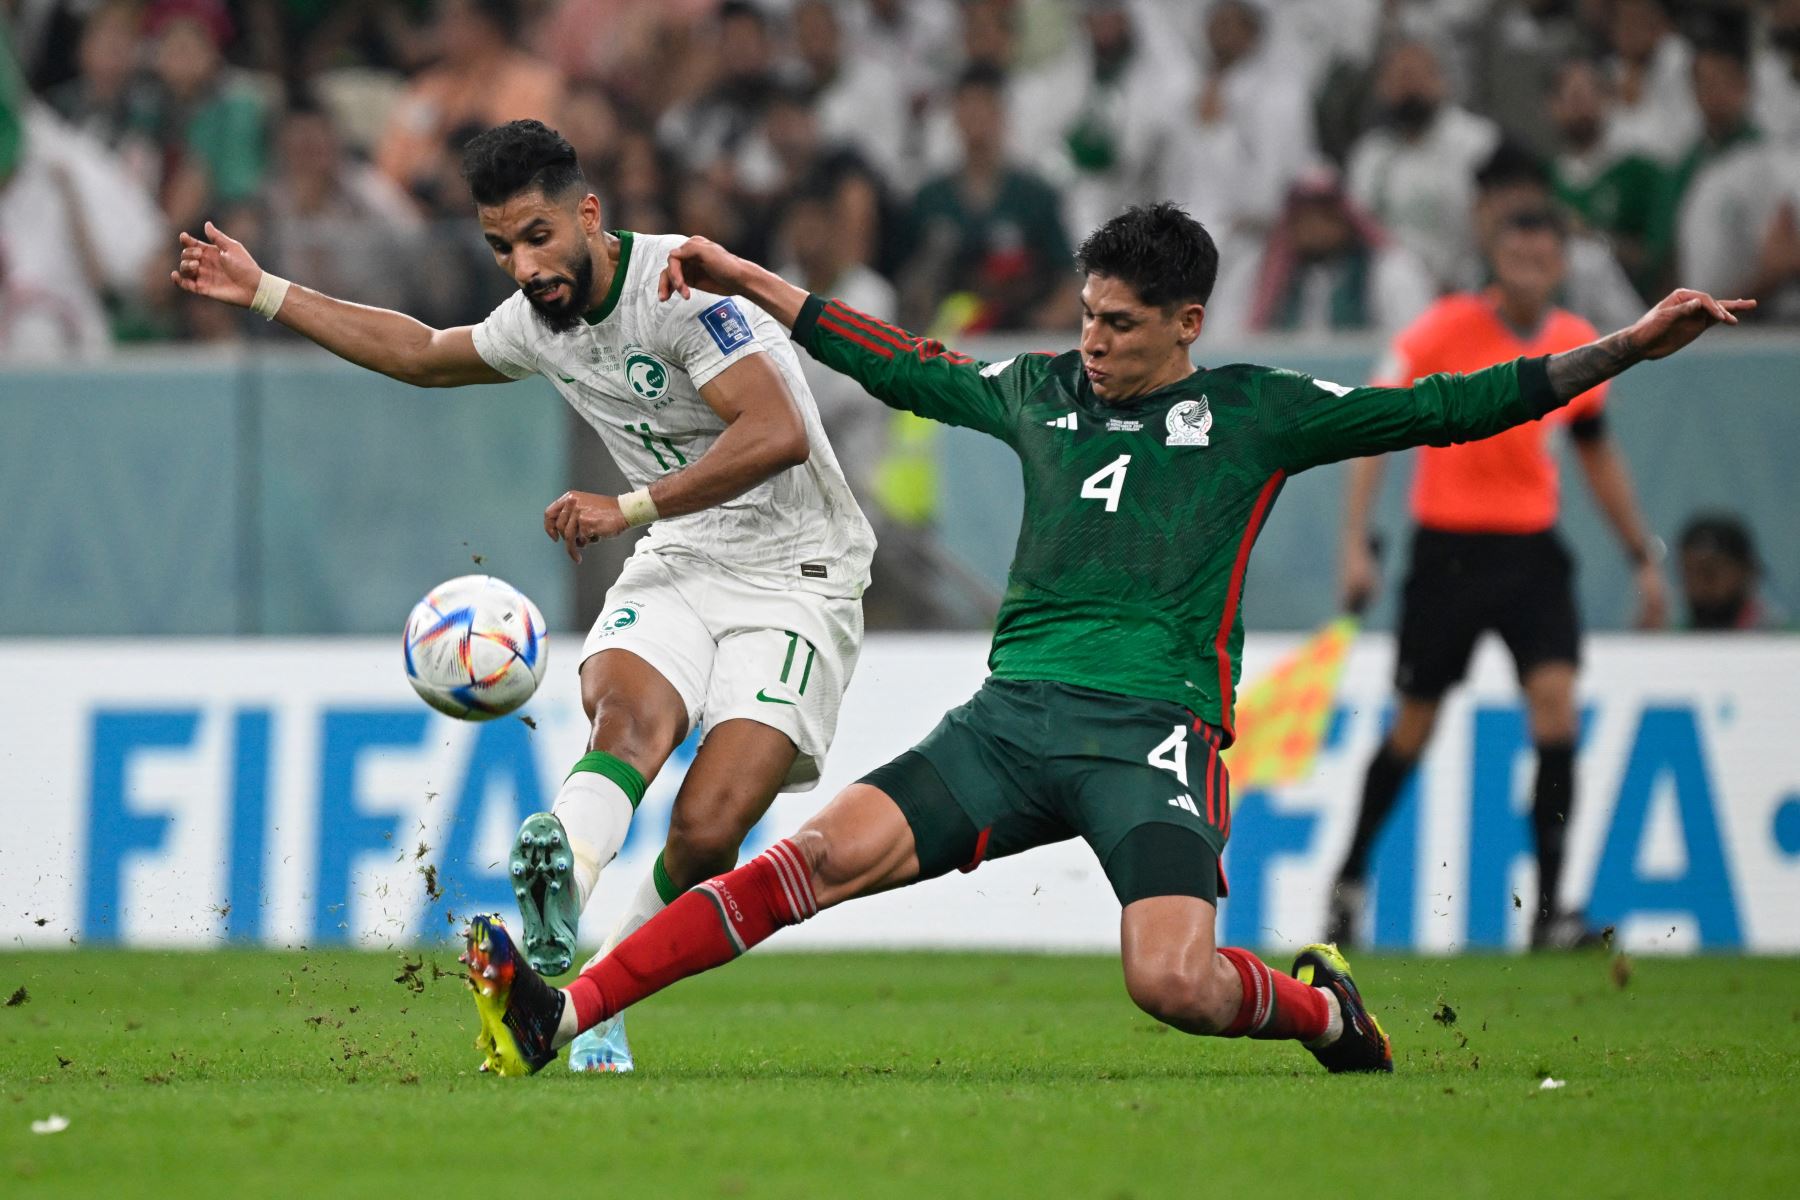 El mediocampista de México Edson Alvarez  aborda al delantero de Arabia Saudita  Saleh Al-Shehri durante el partido de fútbol del Grupo C de la Copa Mundial de Qatar 2022 entre Arabia Saudita y México en el Estadio Lusail en Lusail, al norte de Doha el 30 de noviembre. , 2022. Foto: AFP